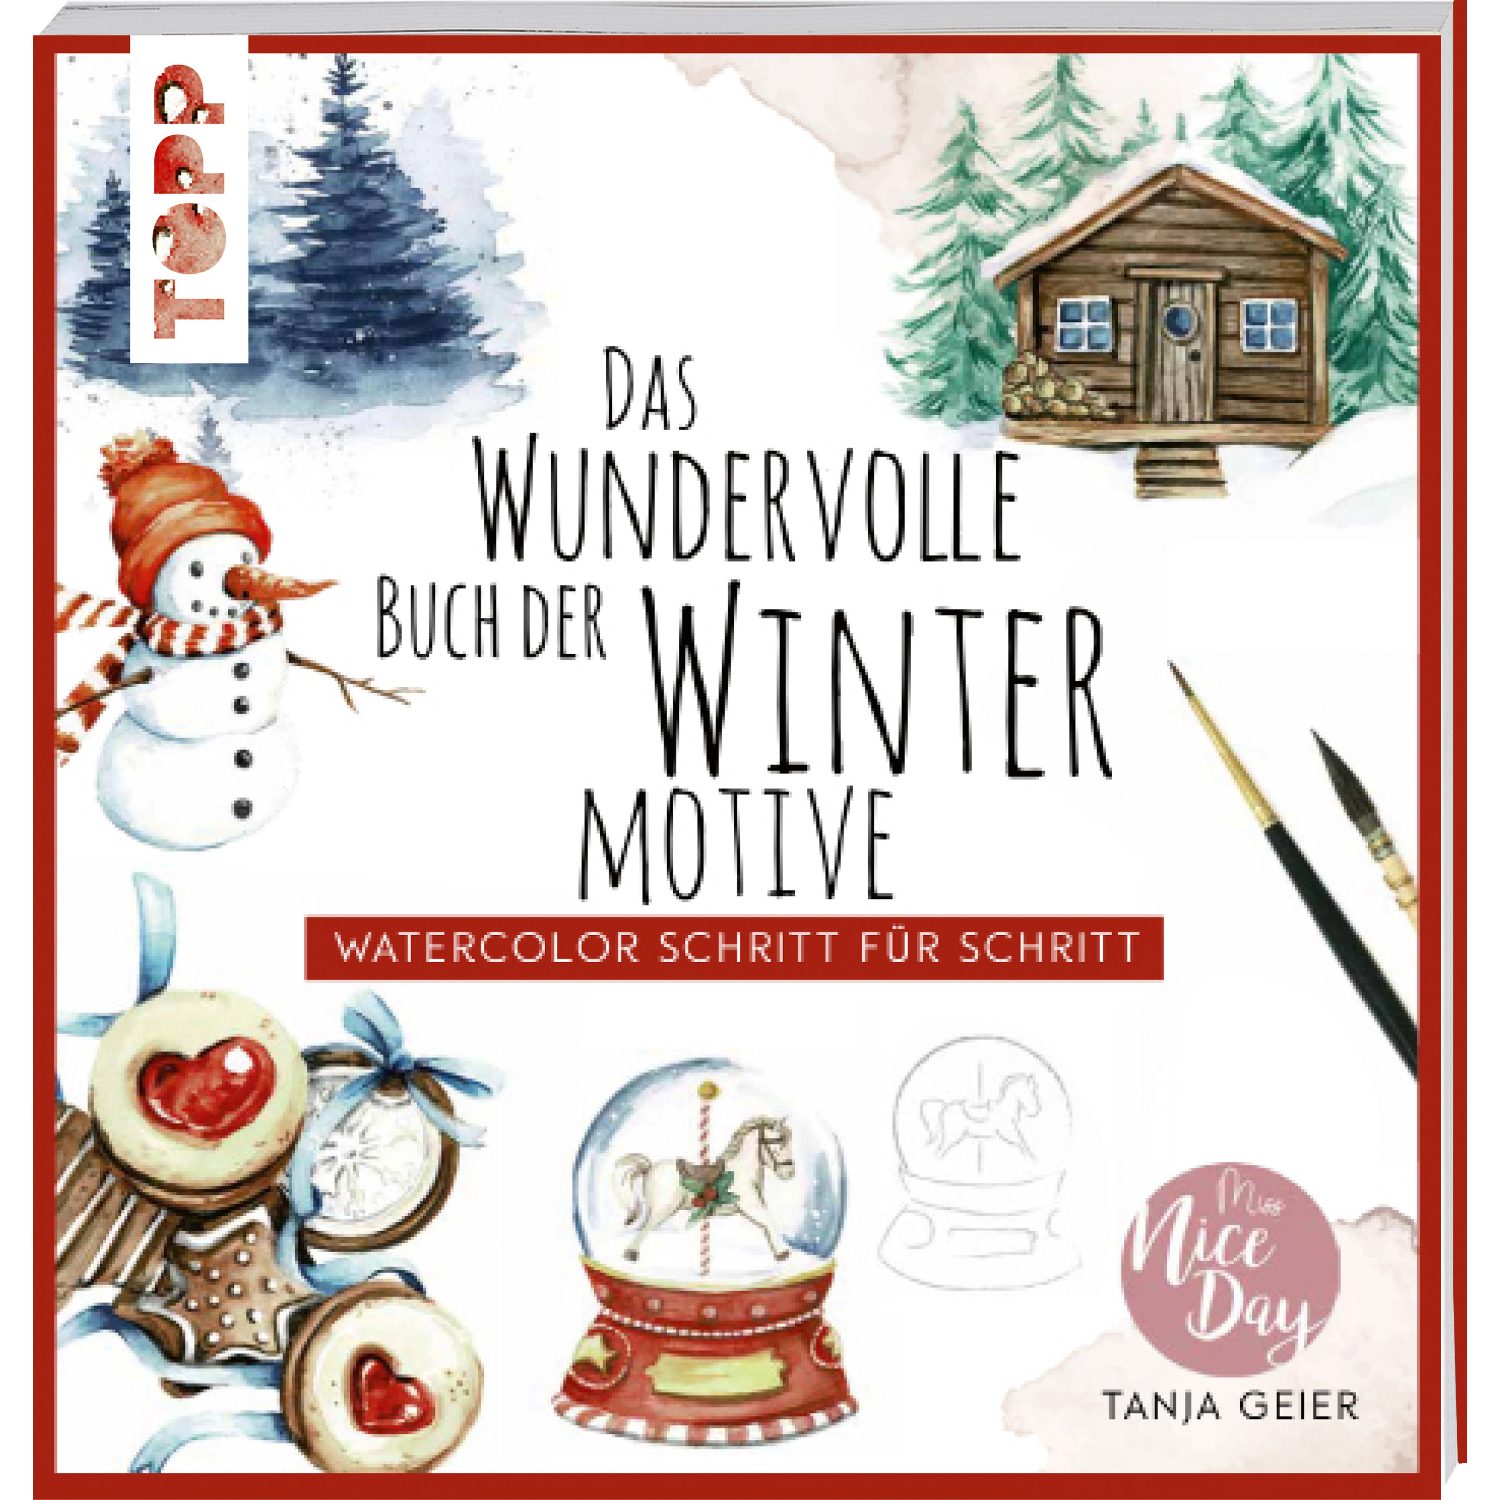 Watercolour Schritt für Schritt - Das wundervolle Buch der Wintermotive